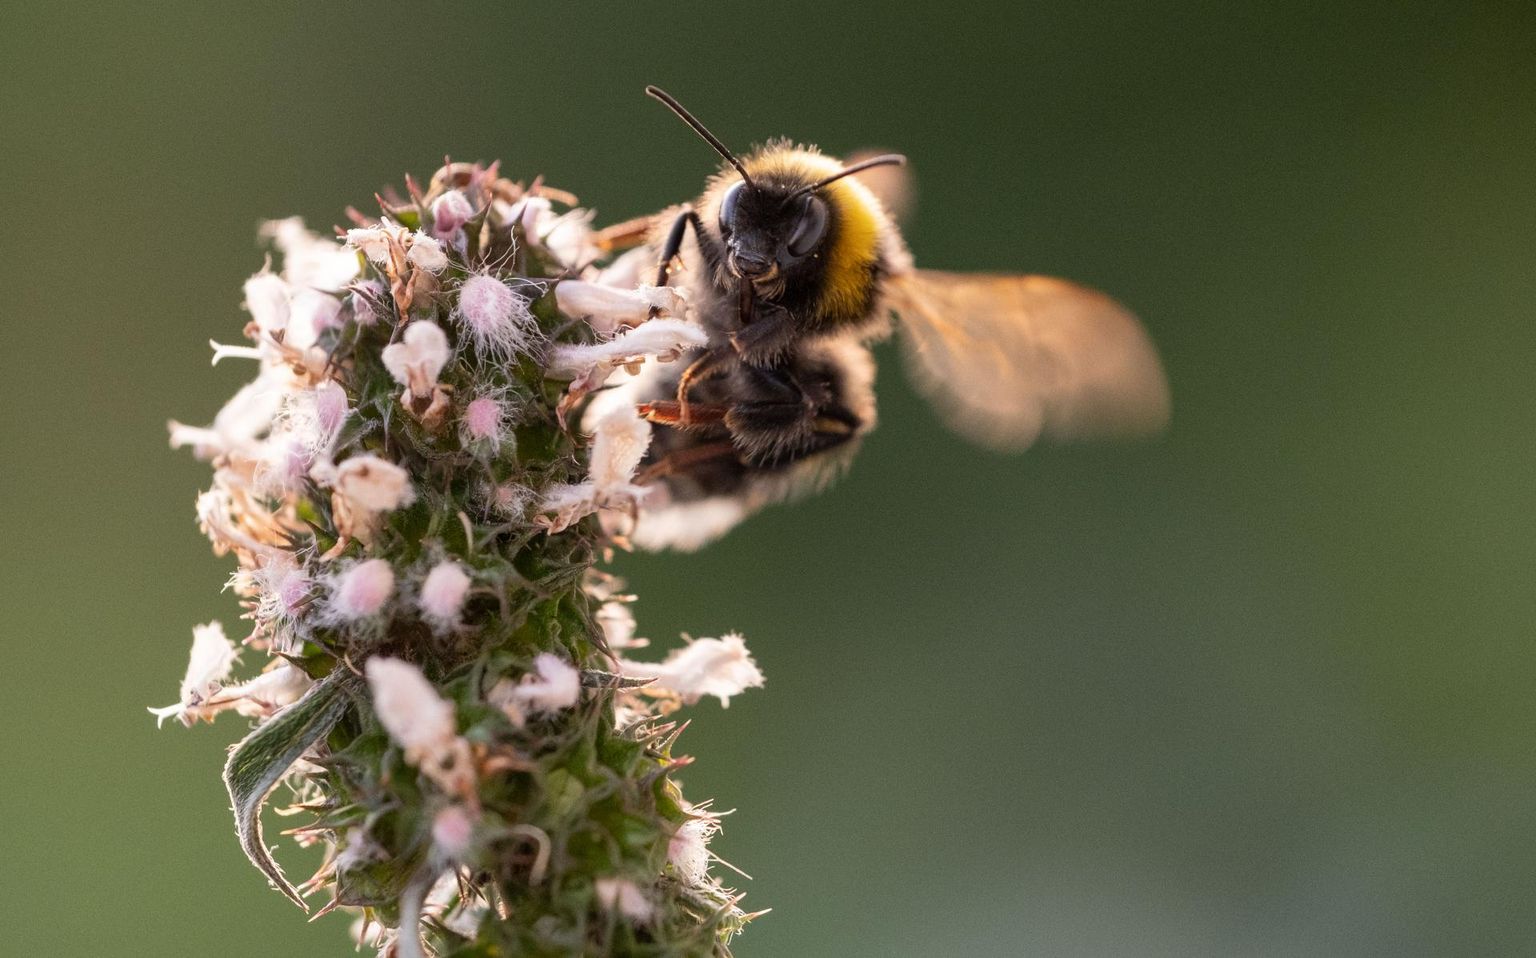 Mesilased on taimemürkidele tundlikud ning mürkide ülekasutamine põhjustab massilist putukate hukkumist.